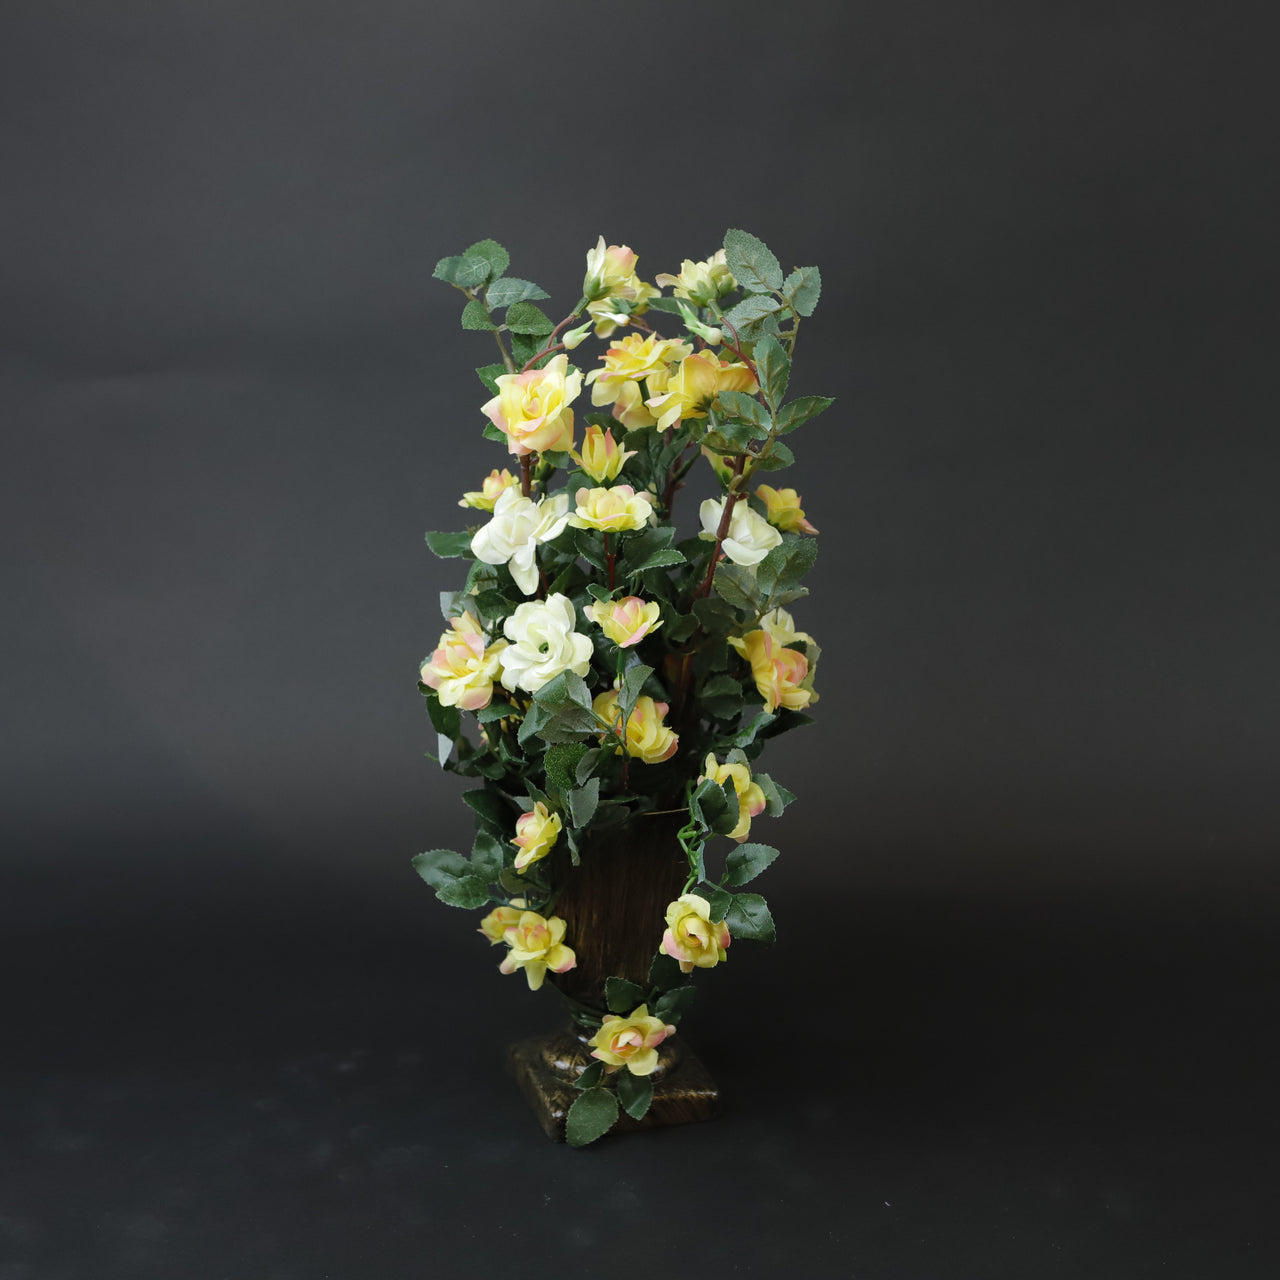 HCFL6983 - Yellow Rose Pedestal Bouquet